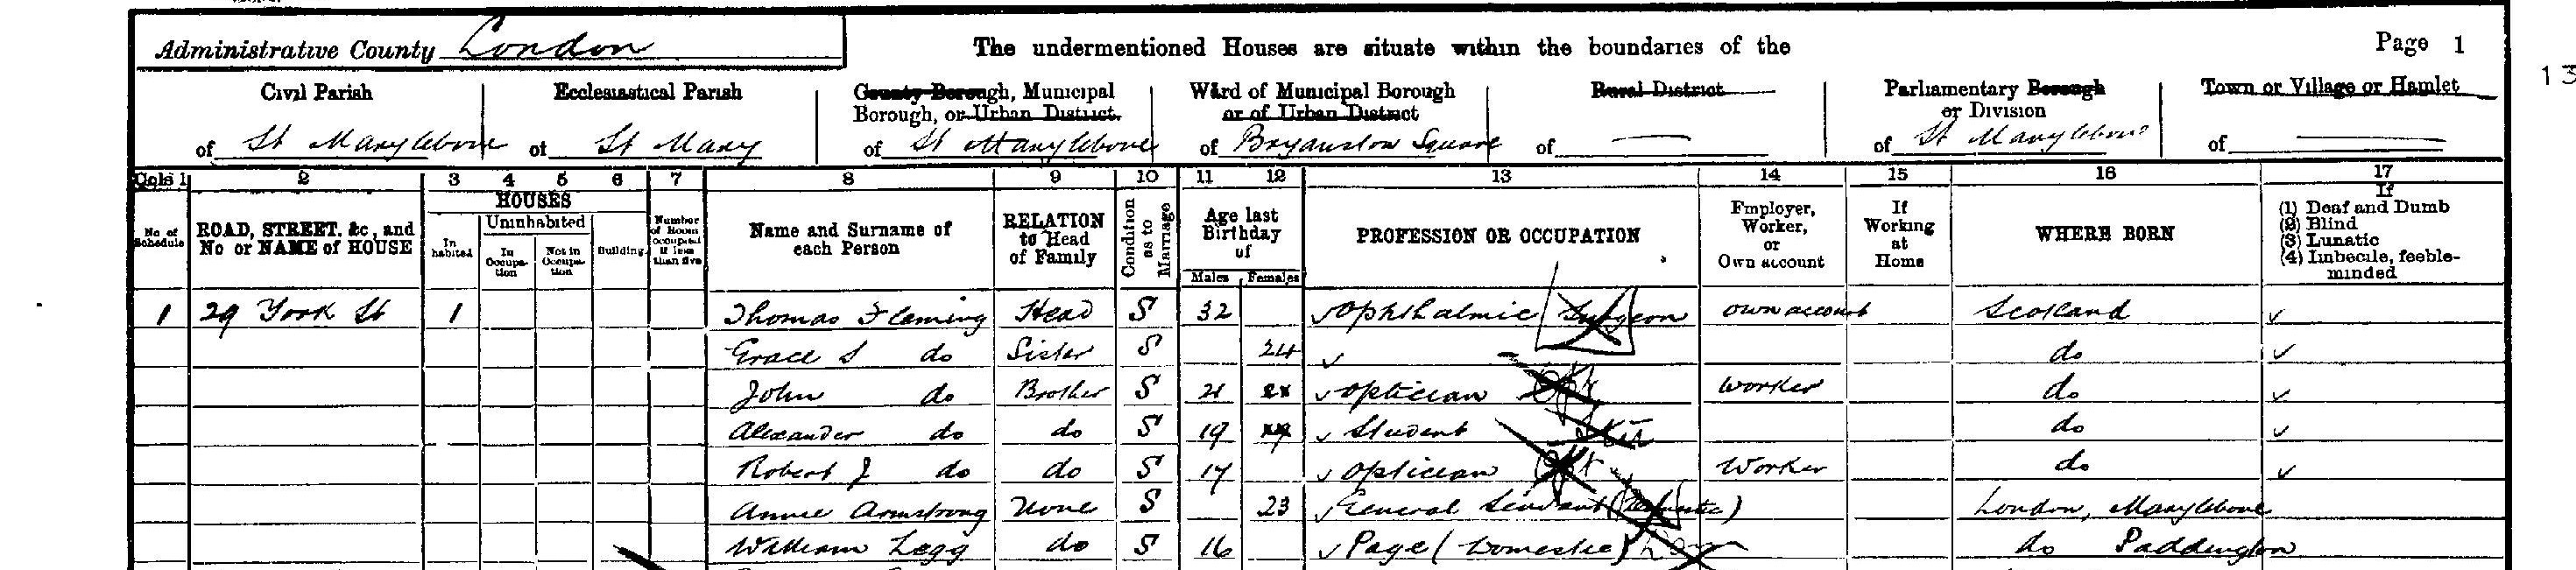 1901 London census